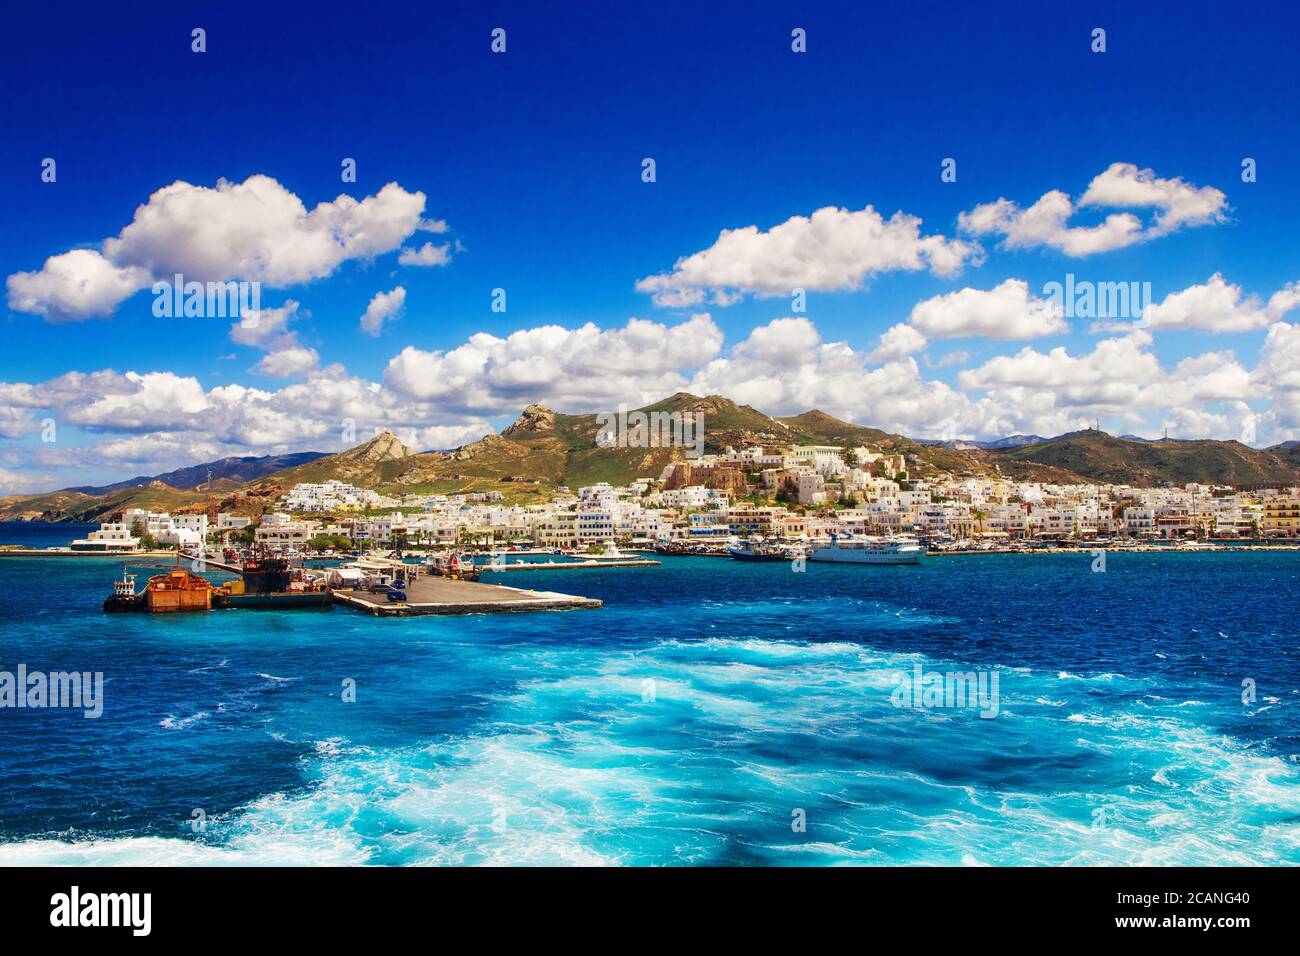 Port sur l'île de Naxos, Grèce Banque D'Images